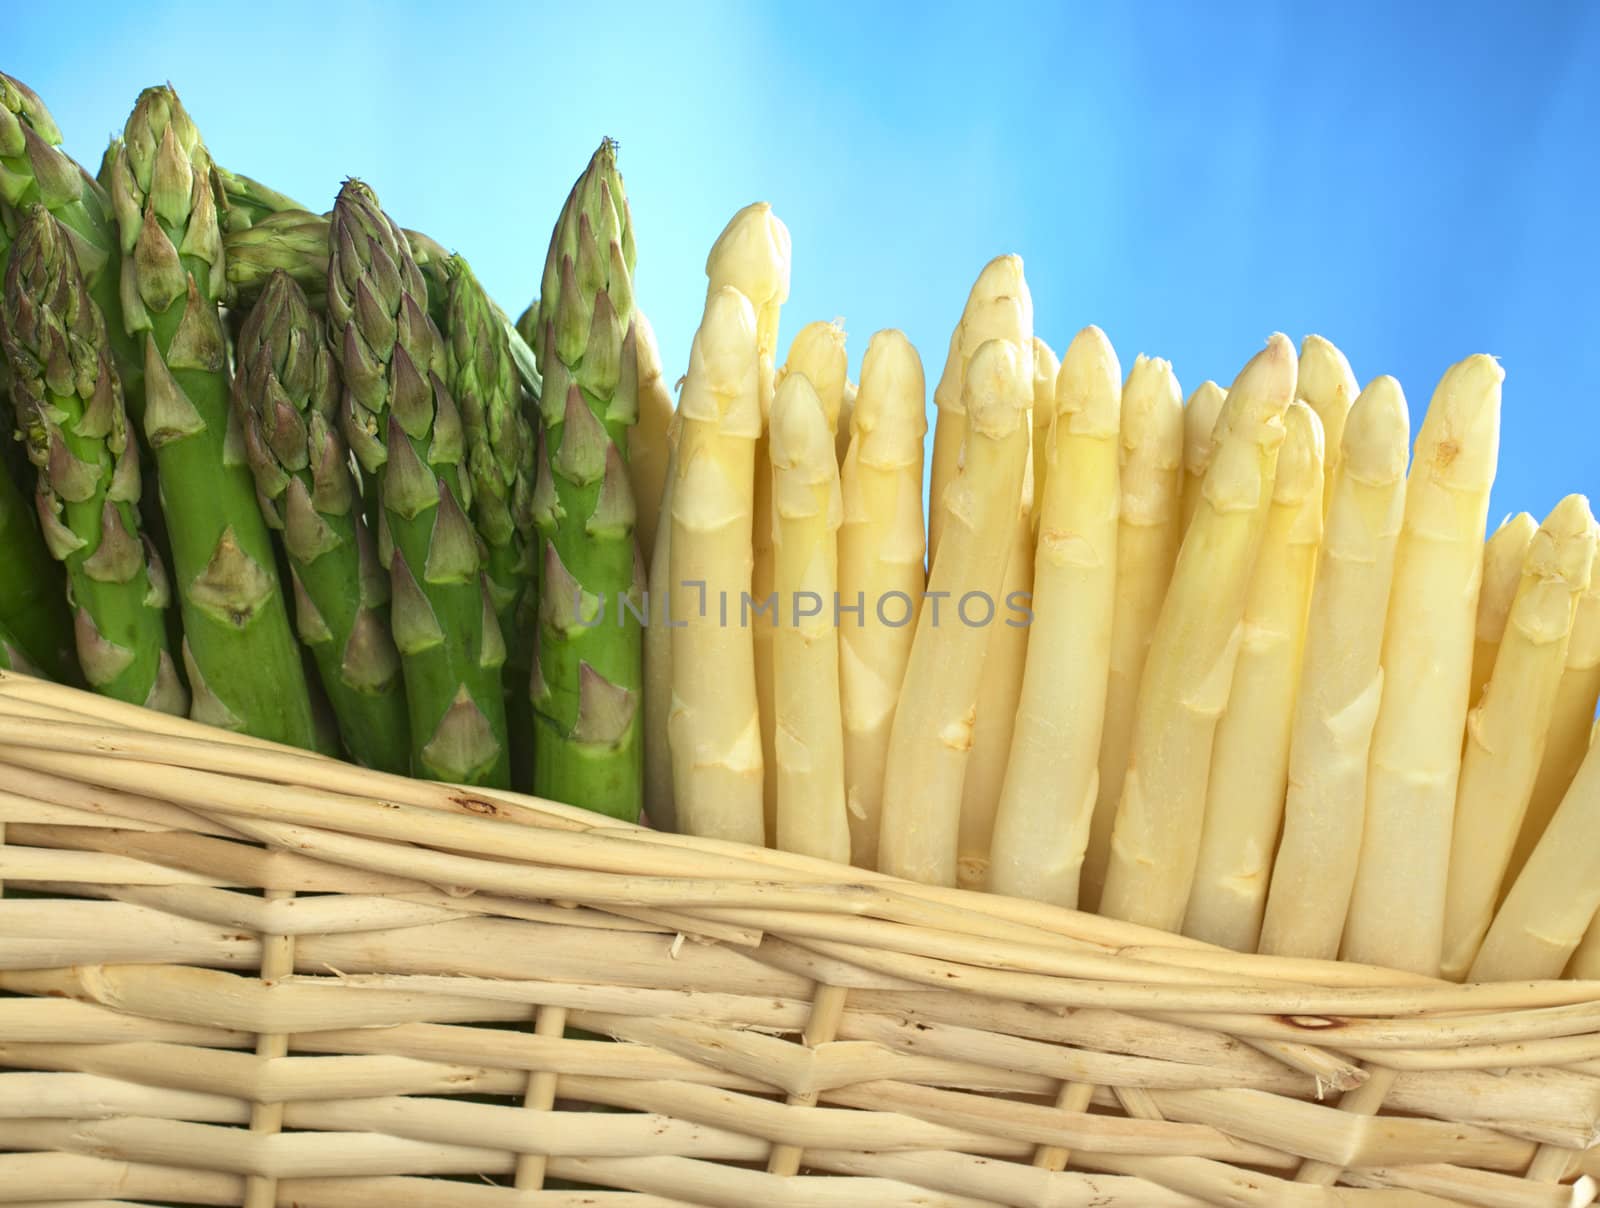 Asparagus in Basket by ildi